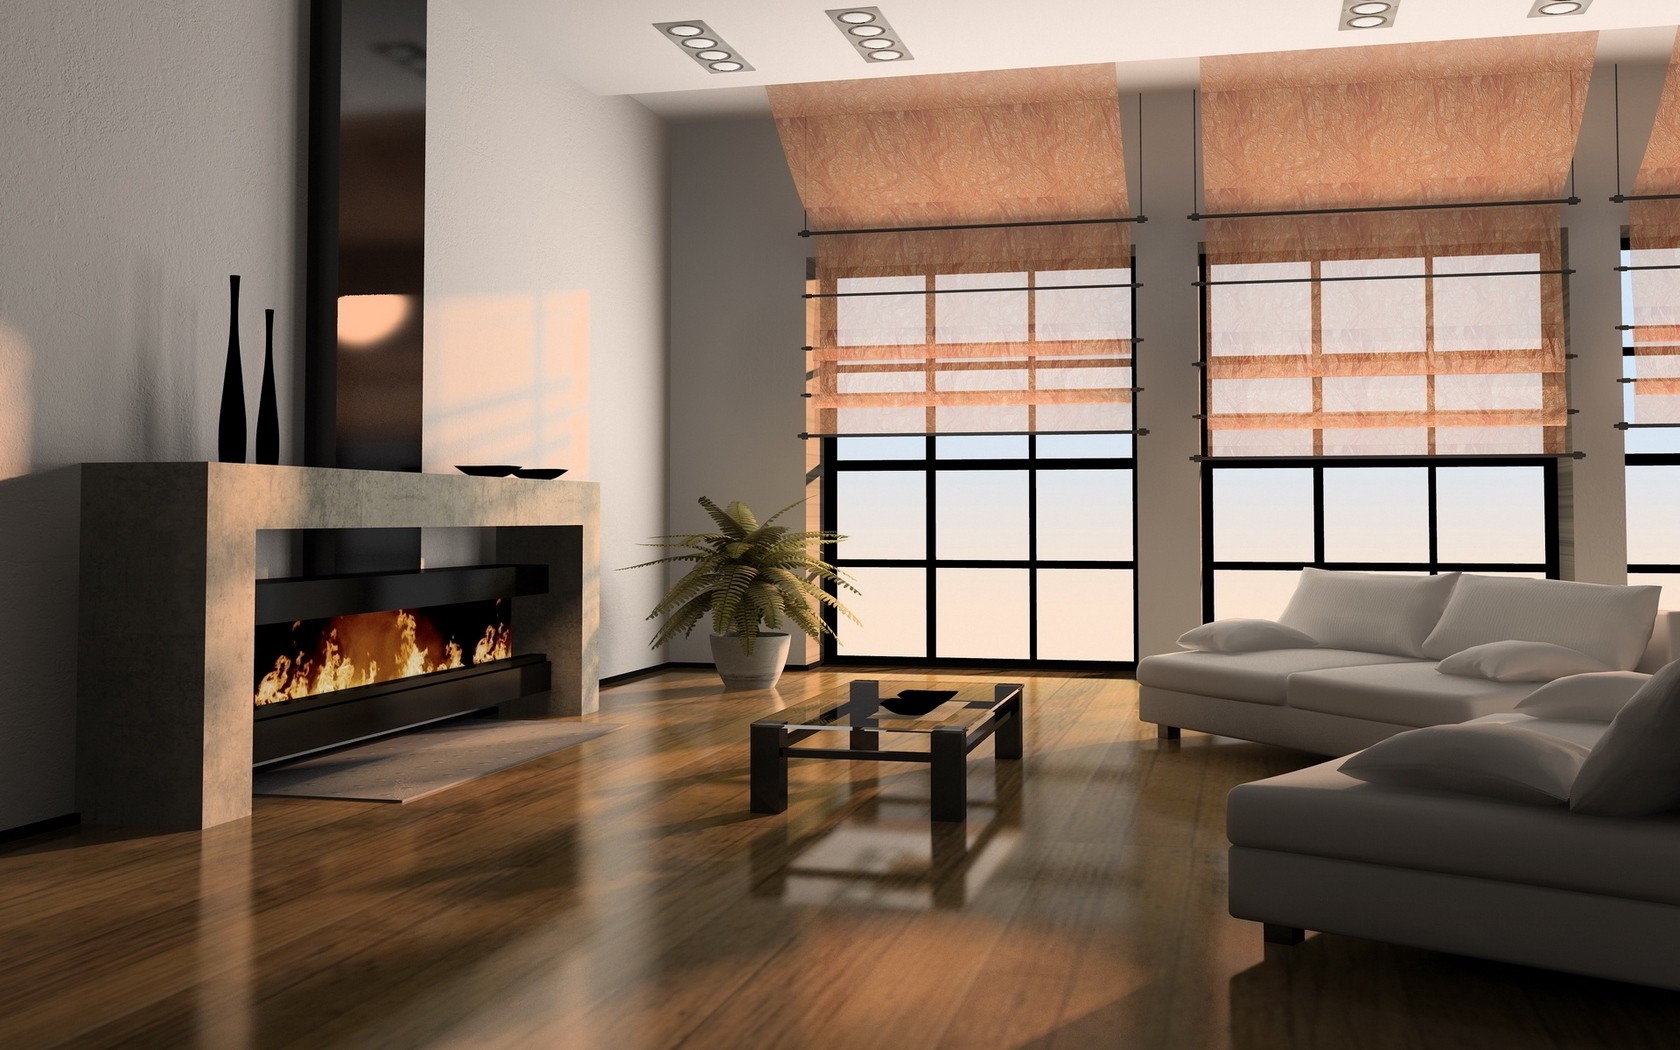 Дизайн балкона 2020 (109 фото): современные идеи интерьера квартиры - отделка внутри лоджии размером 3 метра